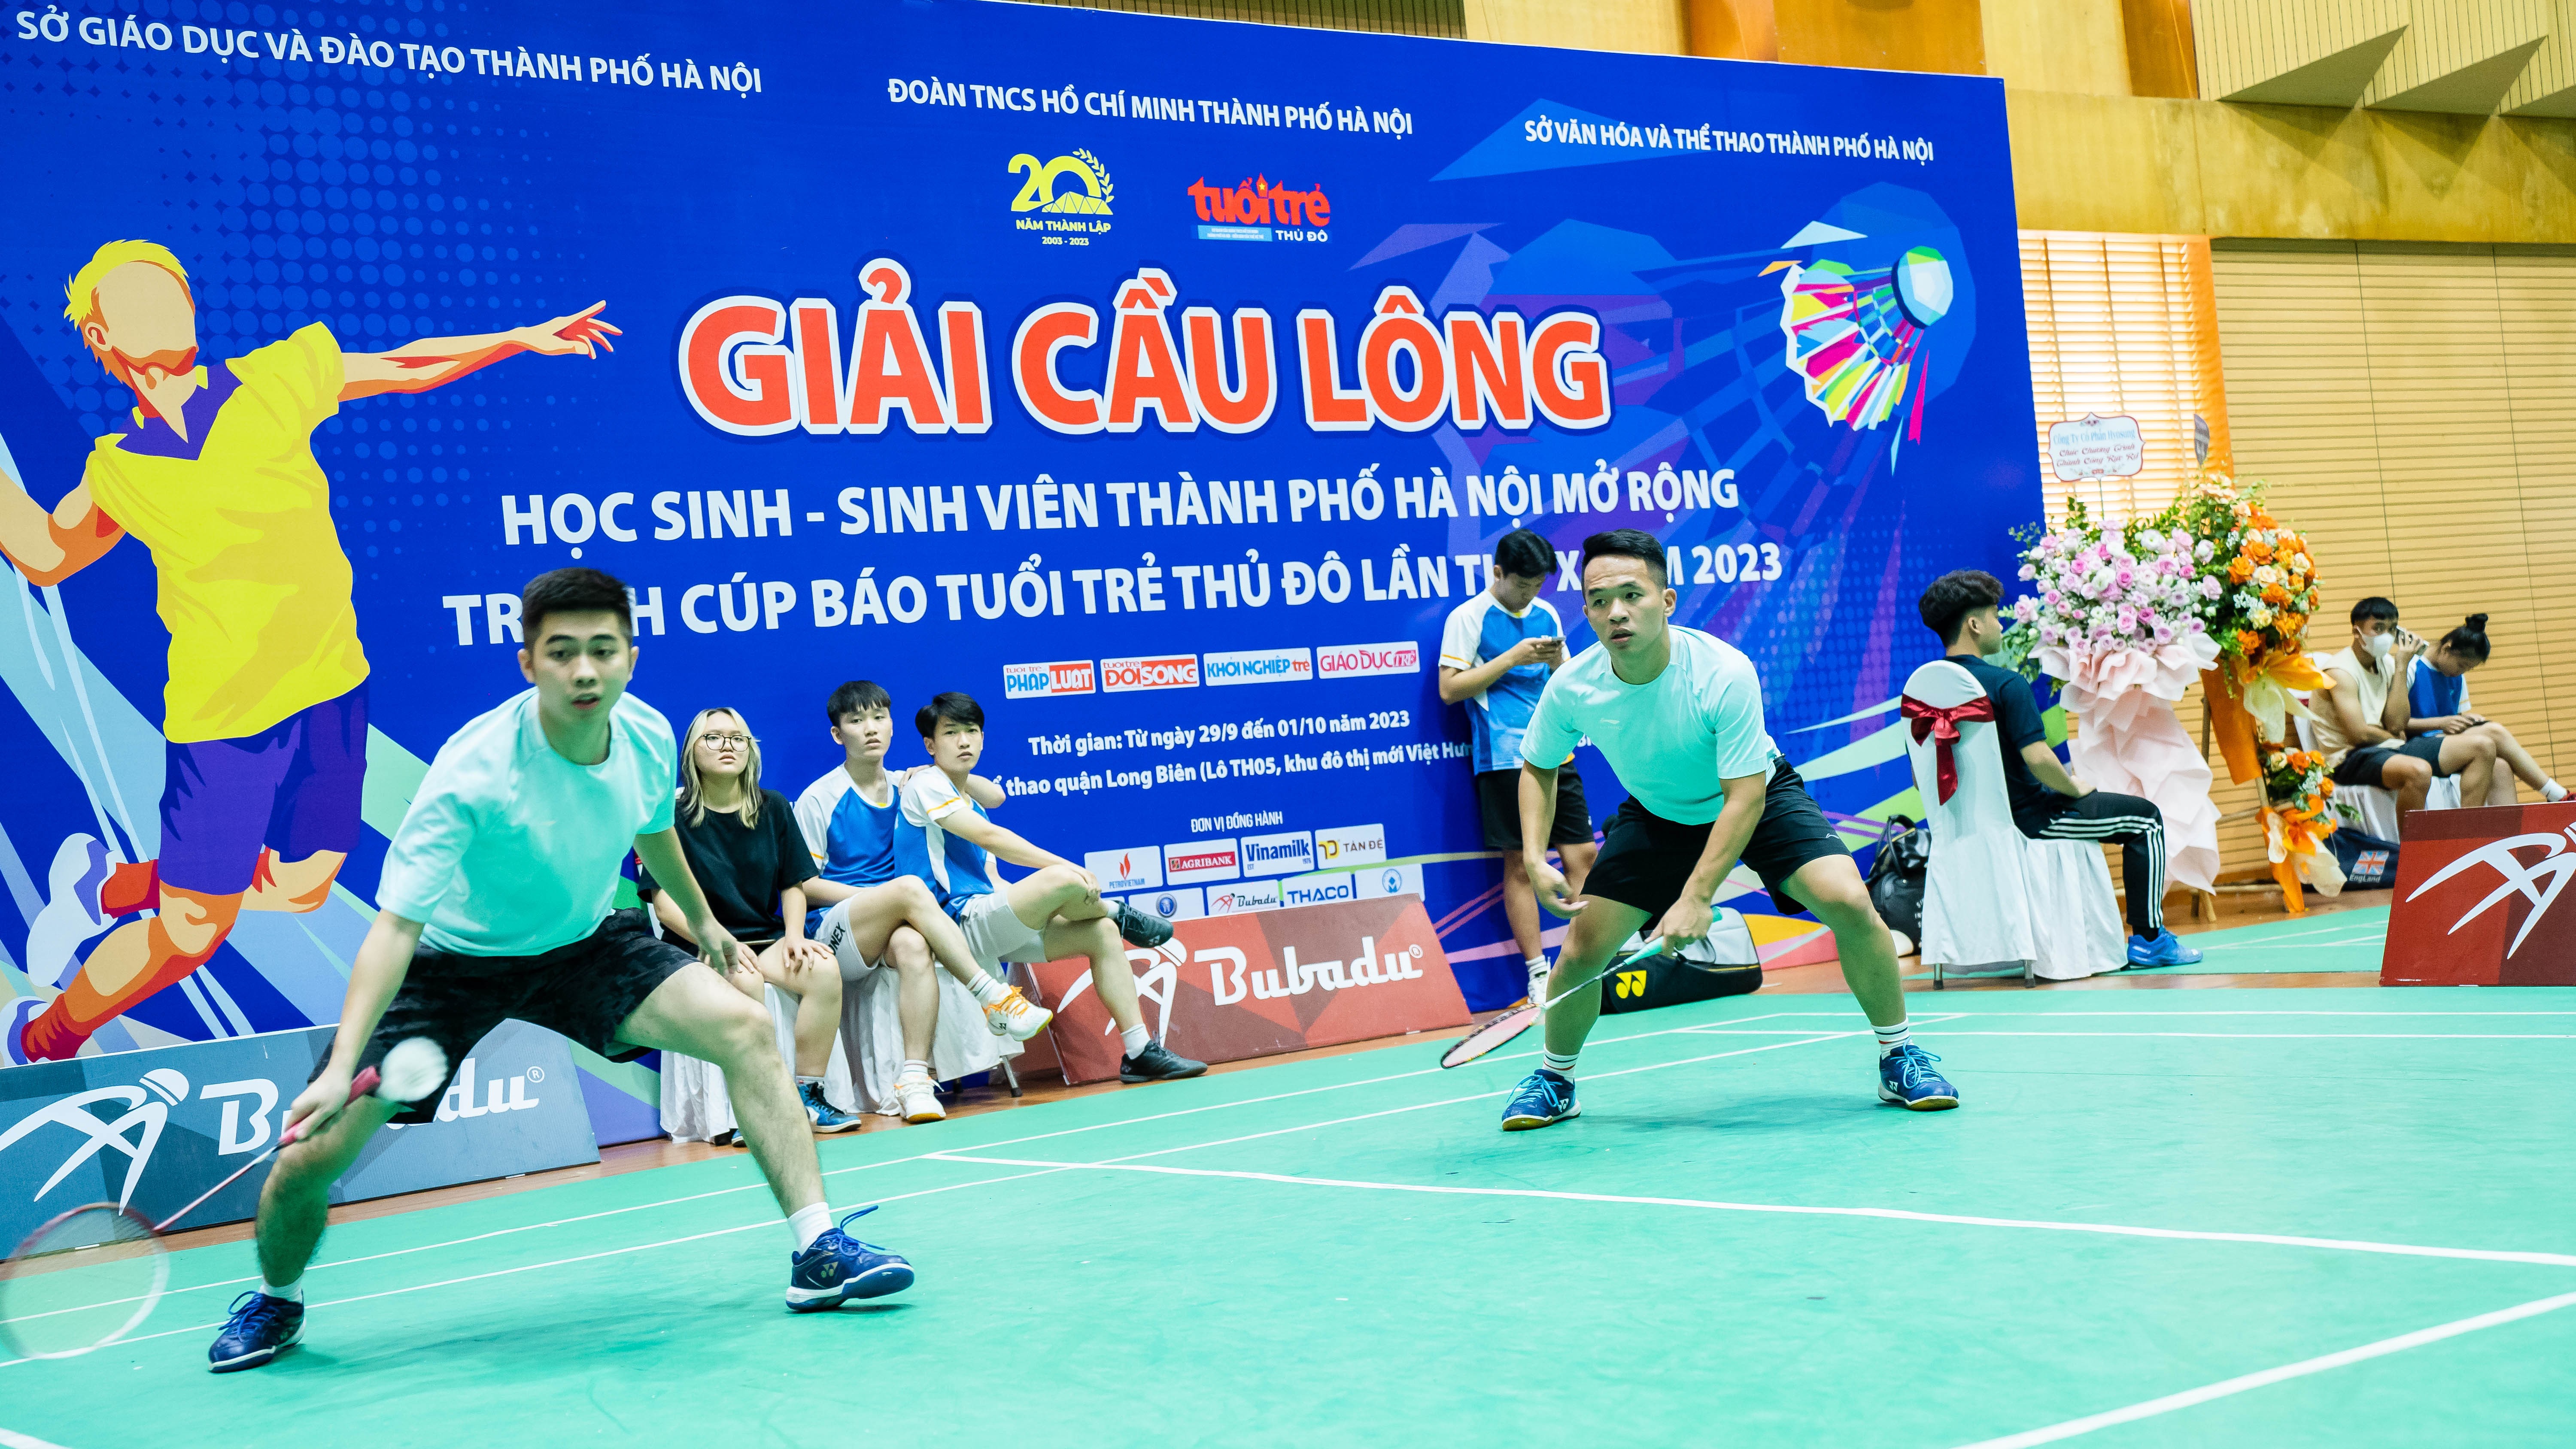 Các tay vợt Trung cấp Kinh tế kỹ thuật Bắc Thăng Long đã nỗ lực thi đấu để tiến sâu vào vòng trong